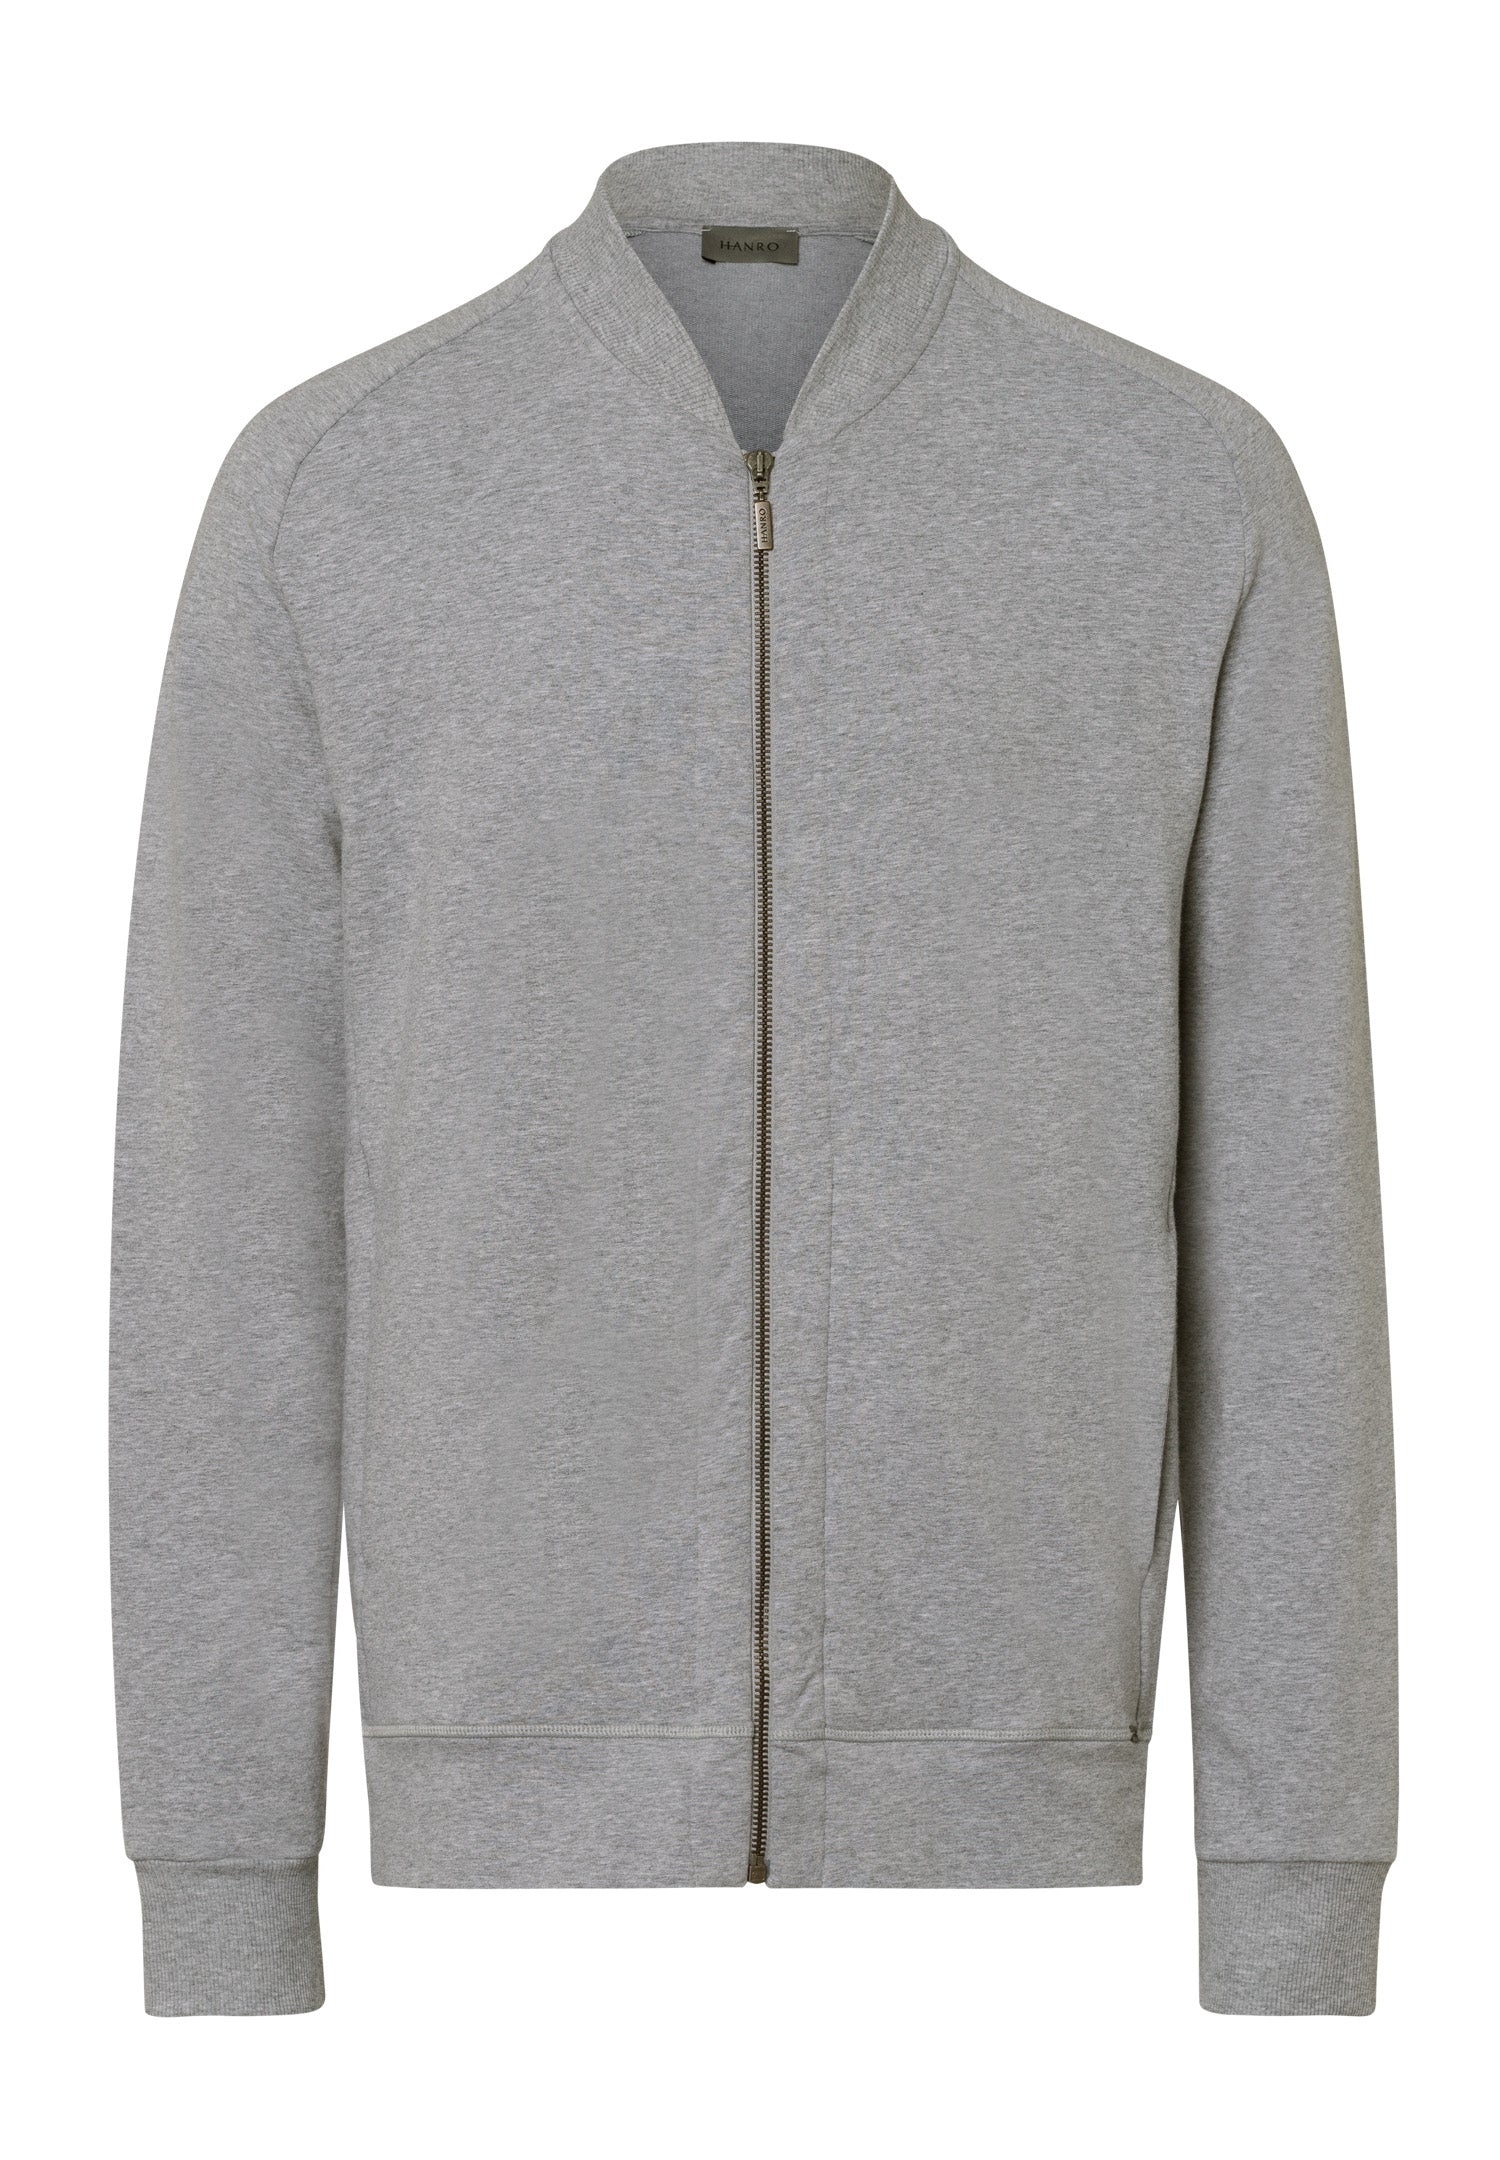 75076 Living Zip Jacket - 1036 Grey Melange